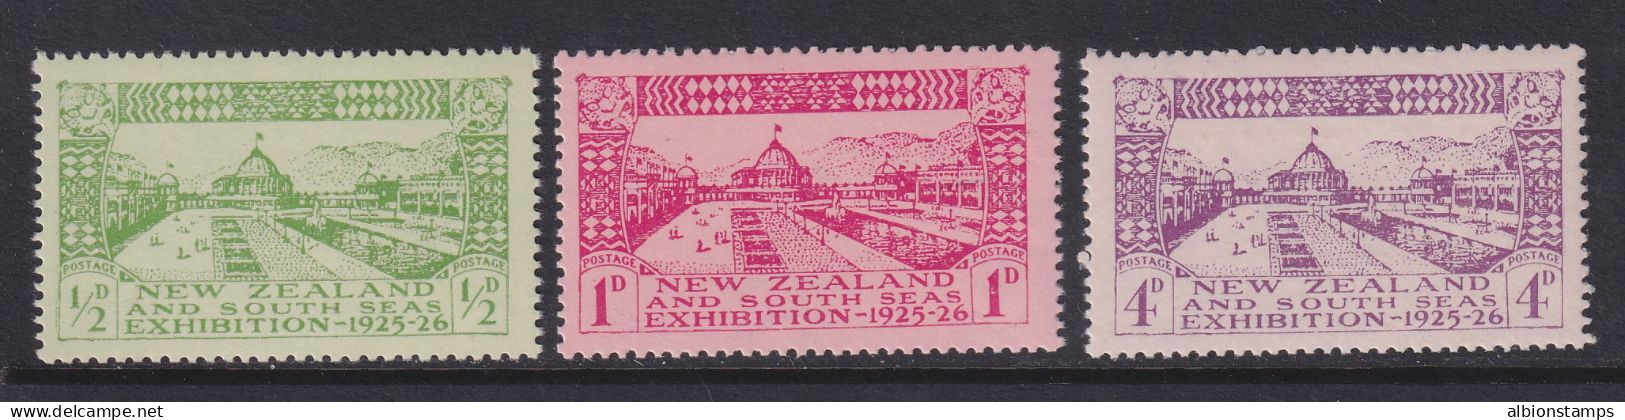 New Zealand, Scott 179-181 (SG 463-465), MNH - Neufs